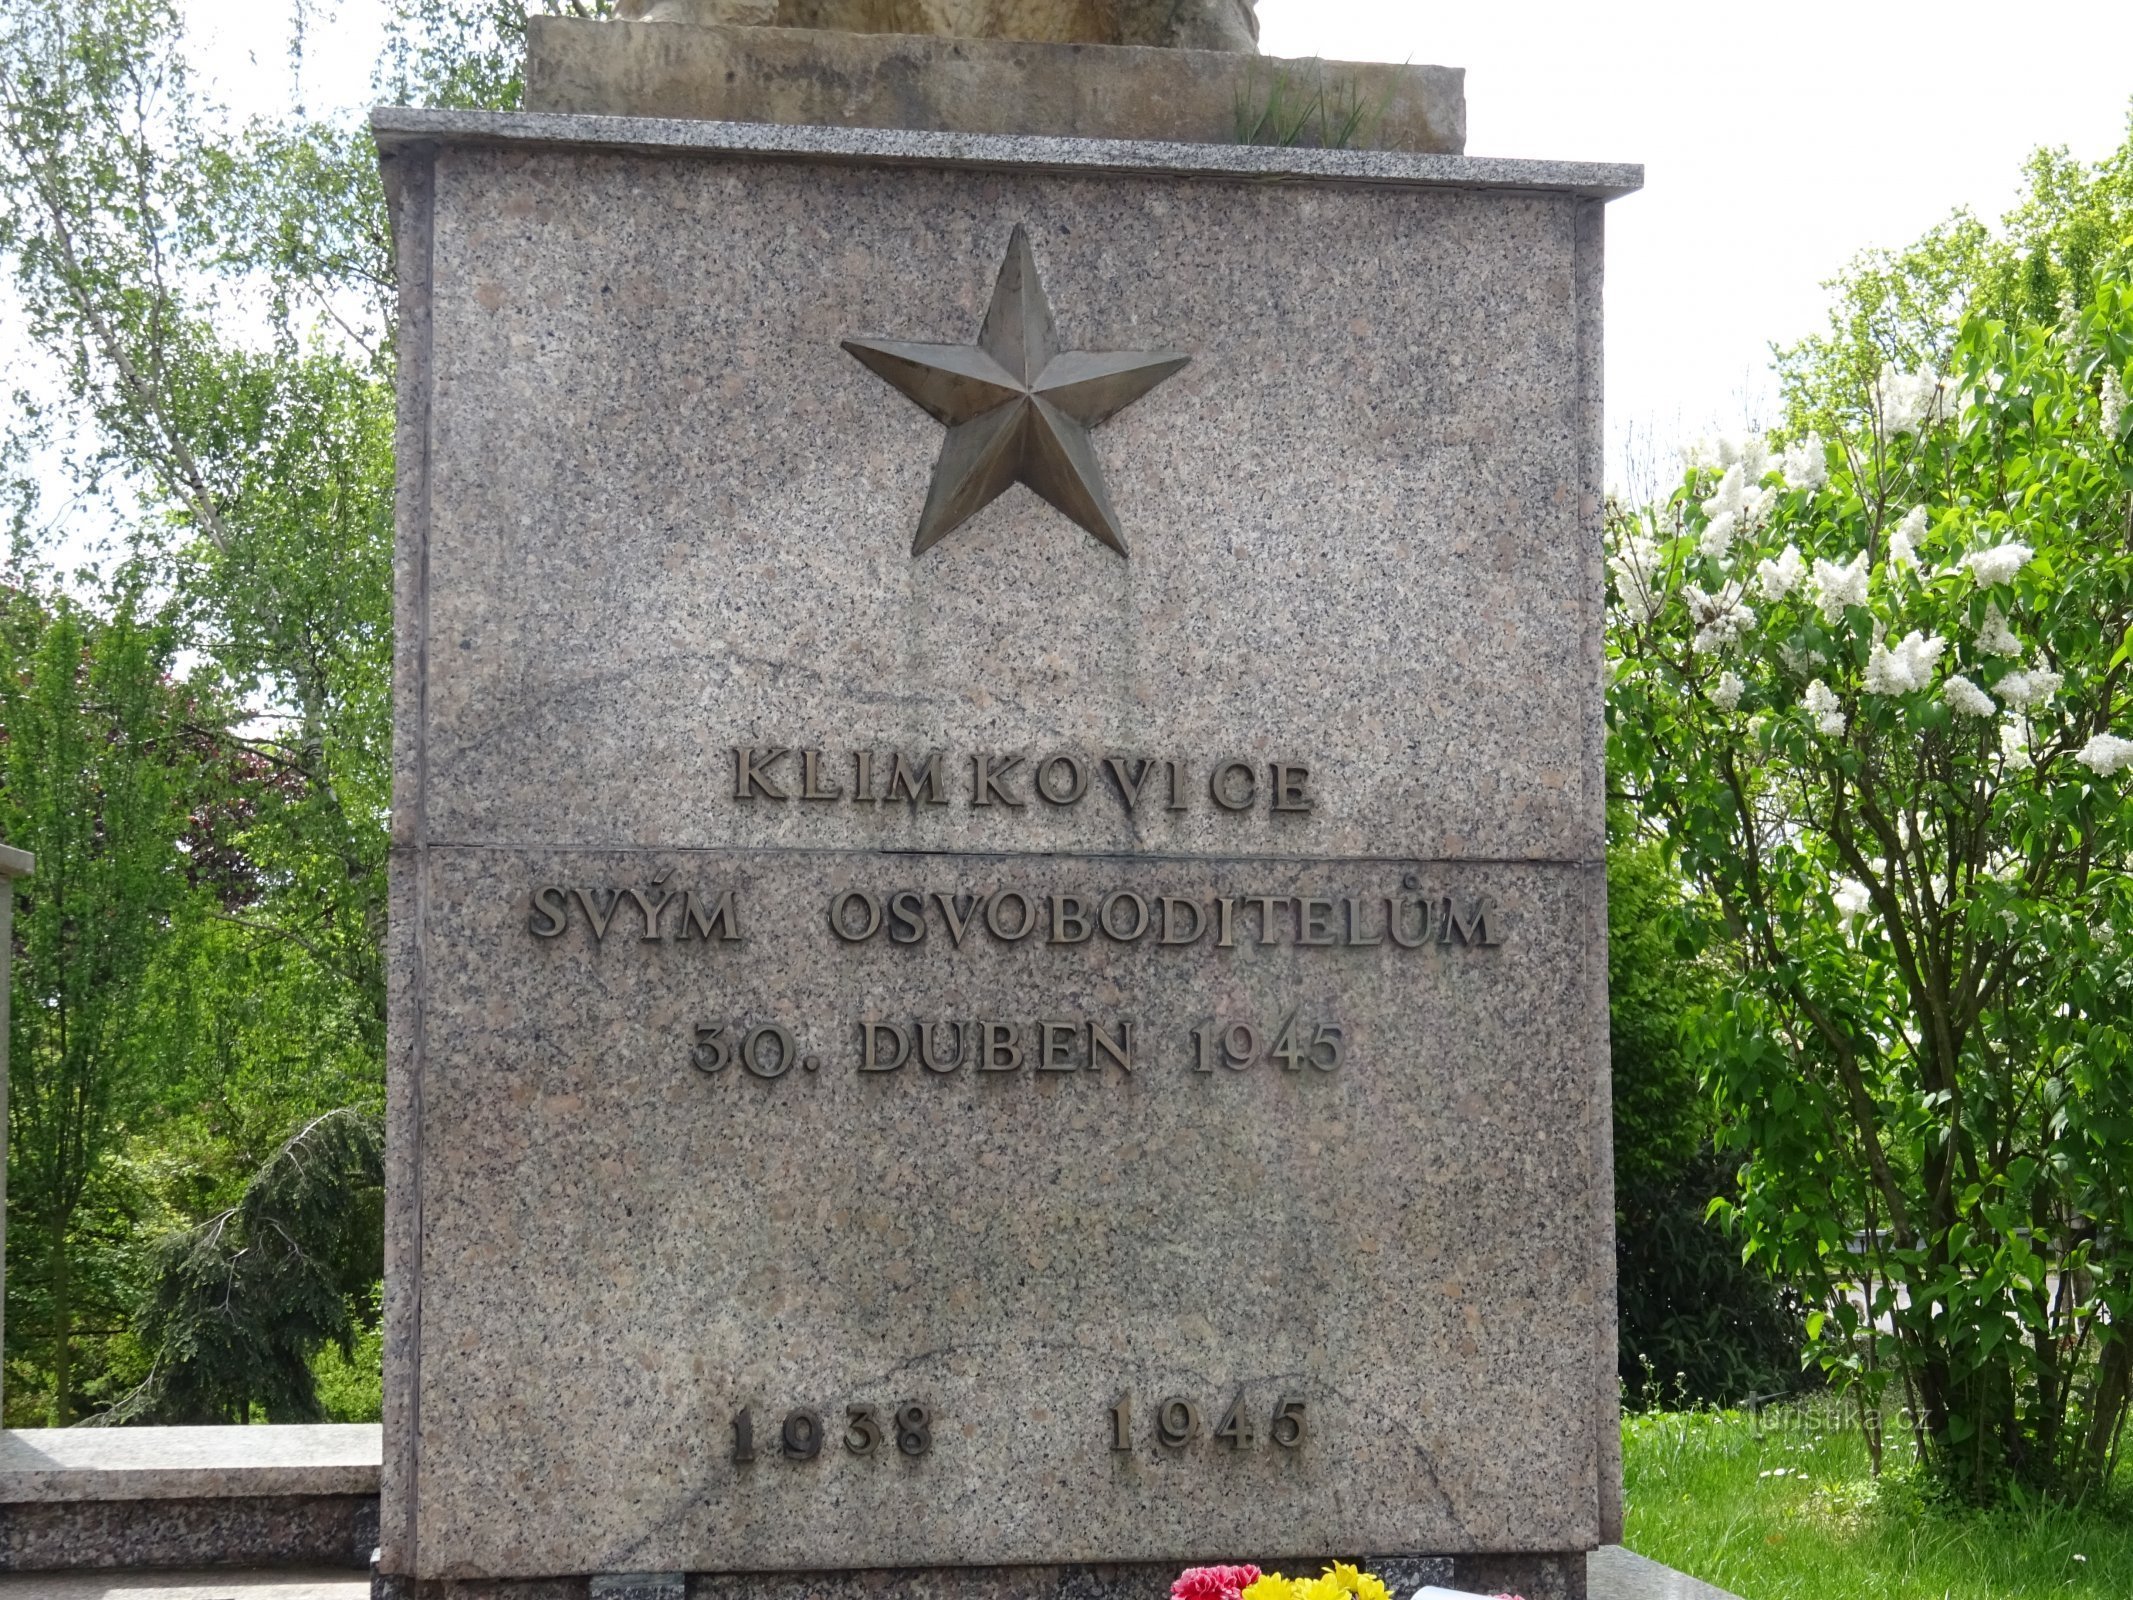 Klimkovice - monumento II. guerras mundiais